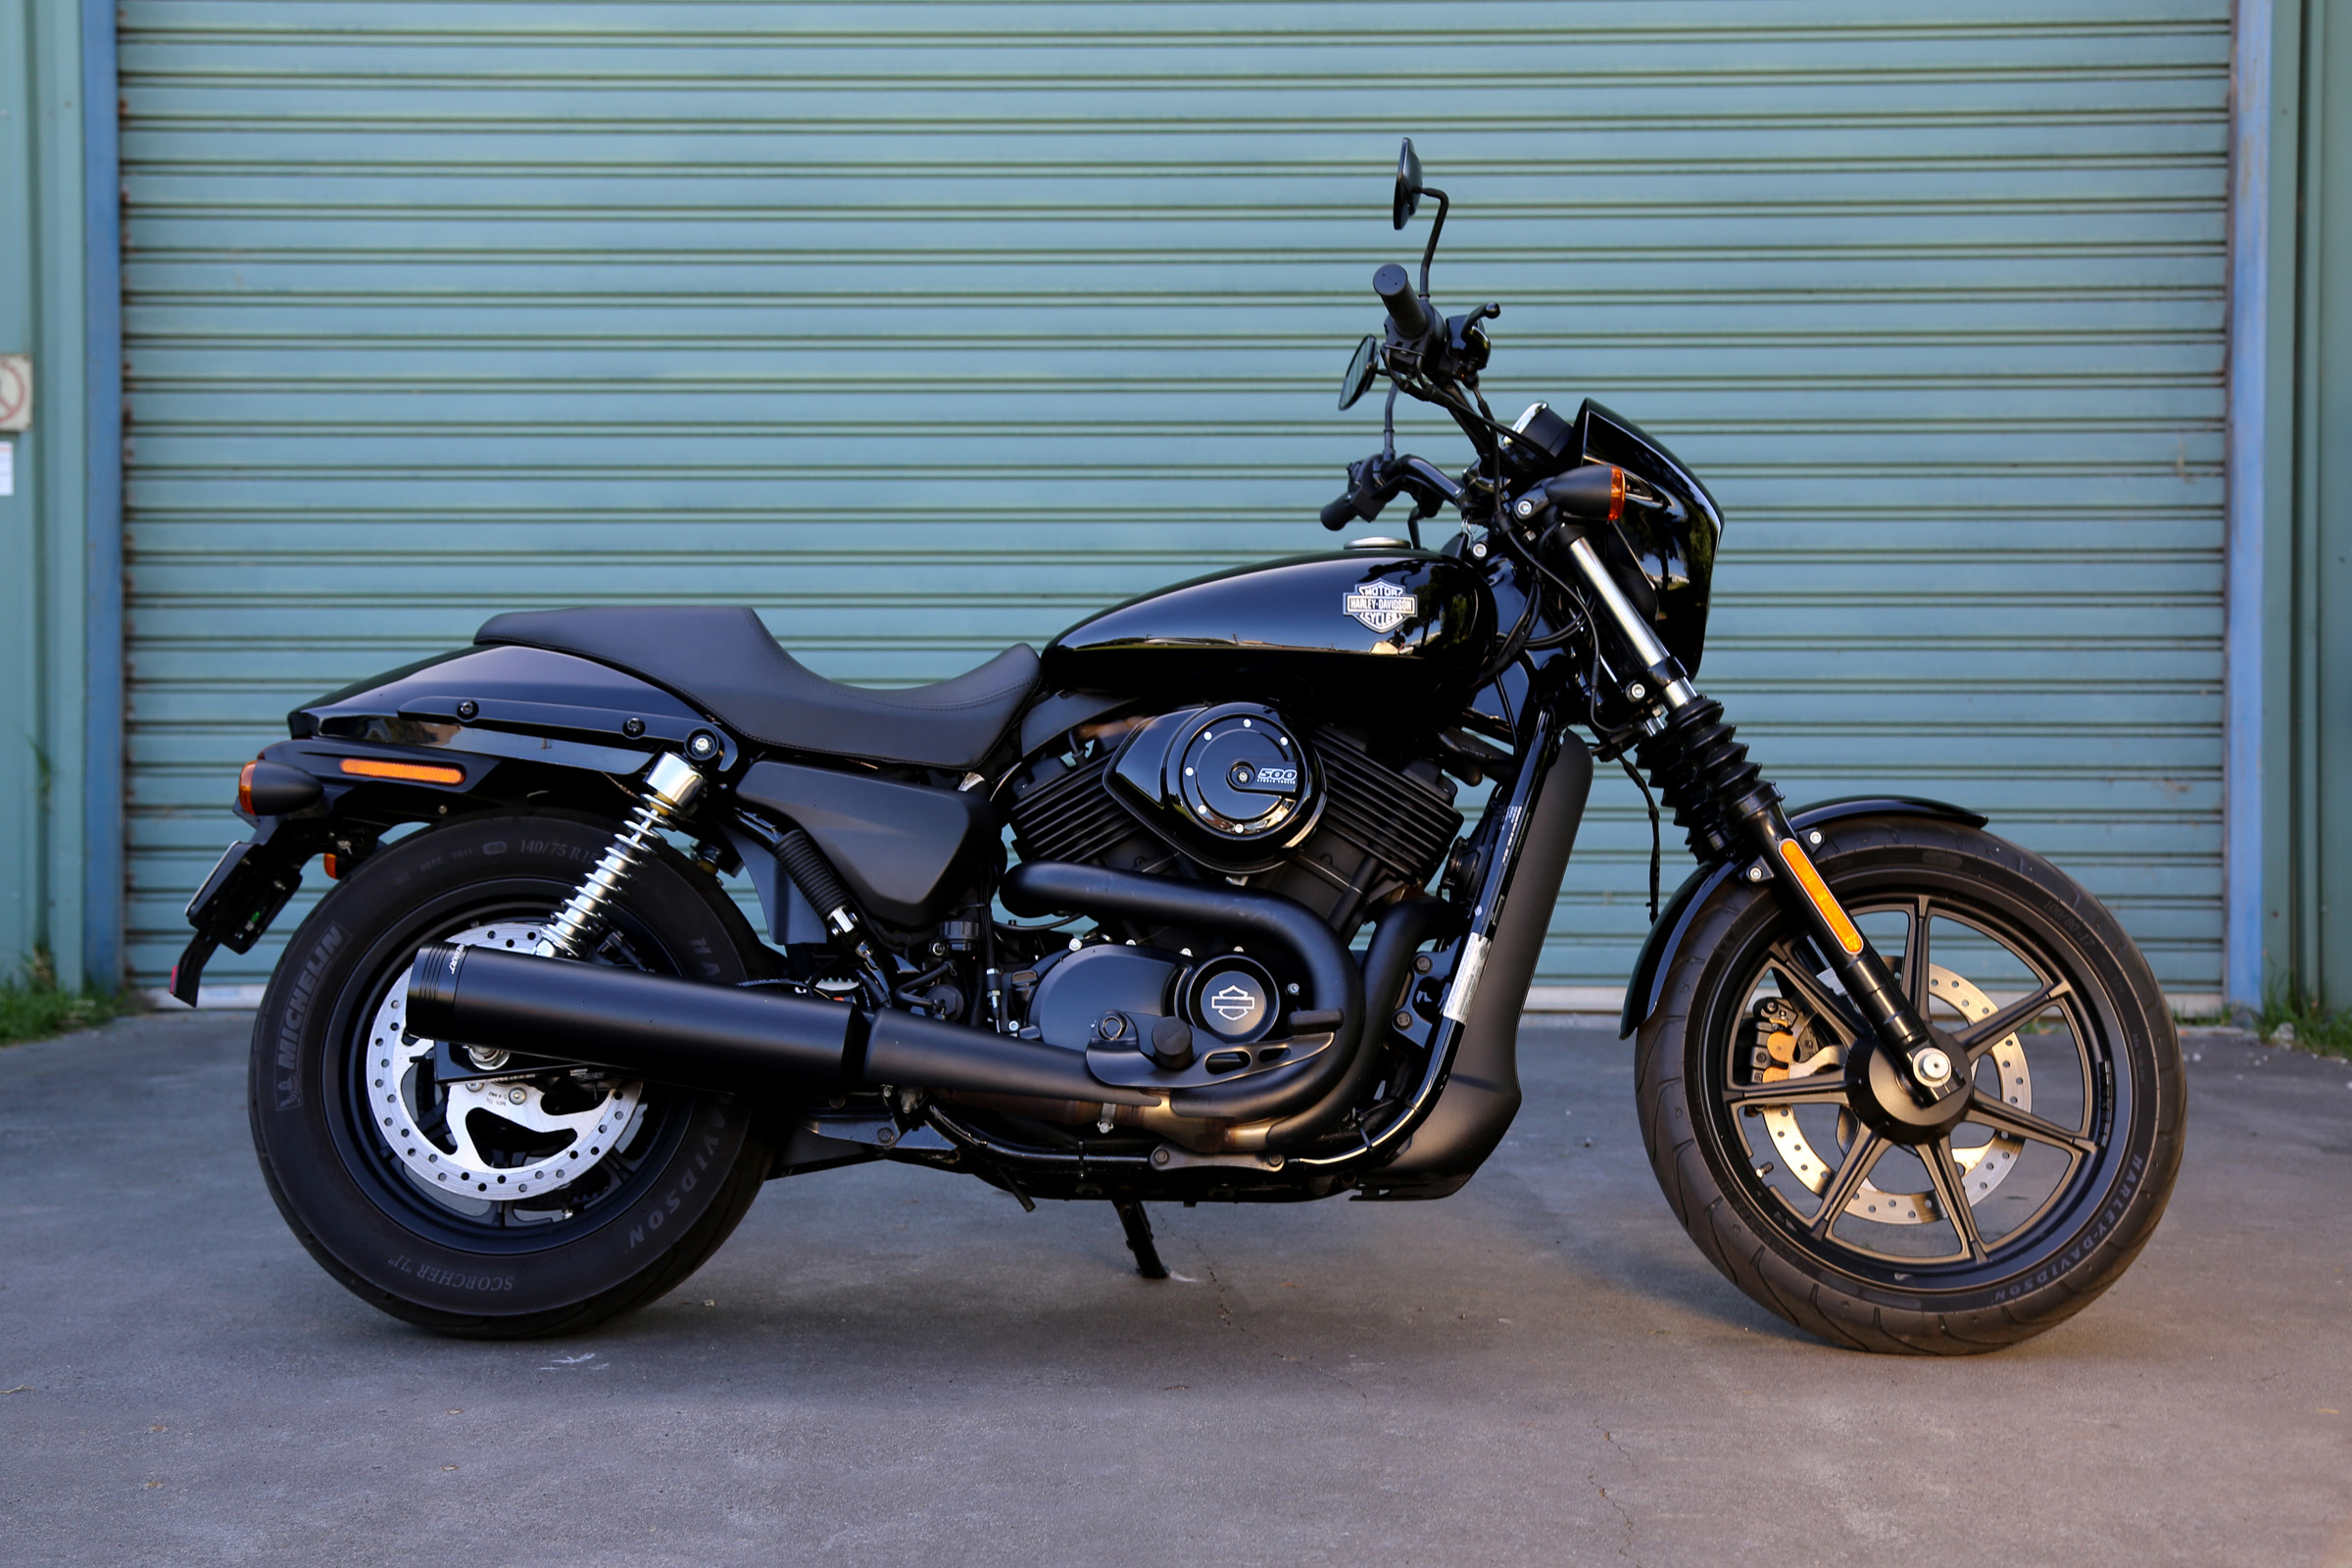 2019 Harley Davidson Street 500 XG500 crs